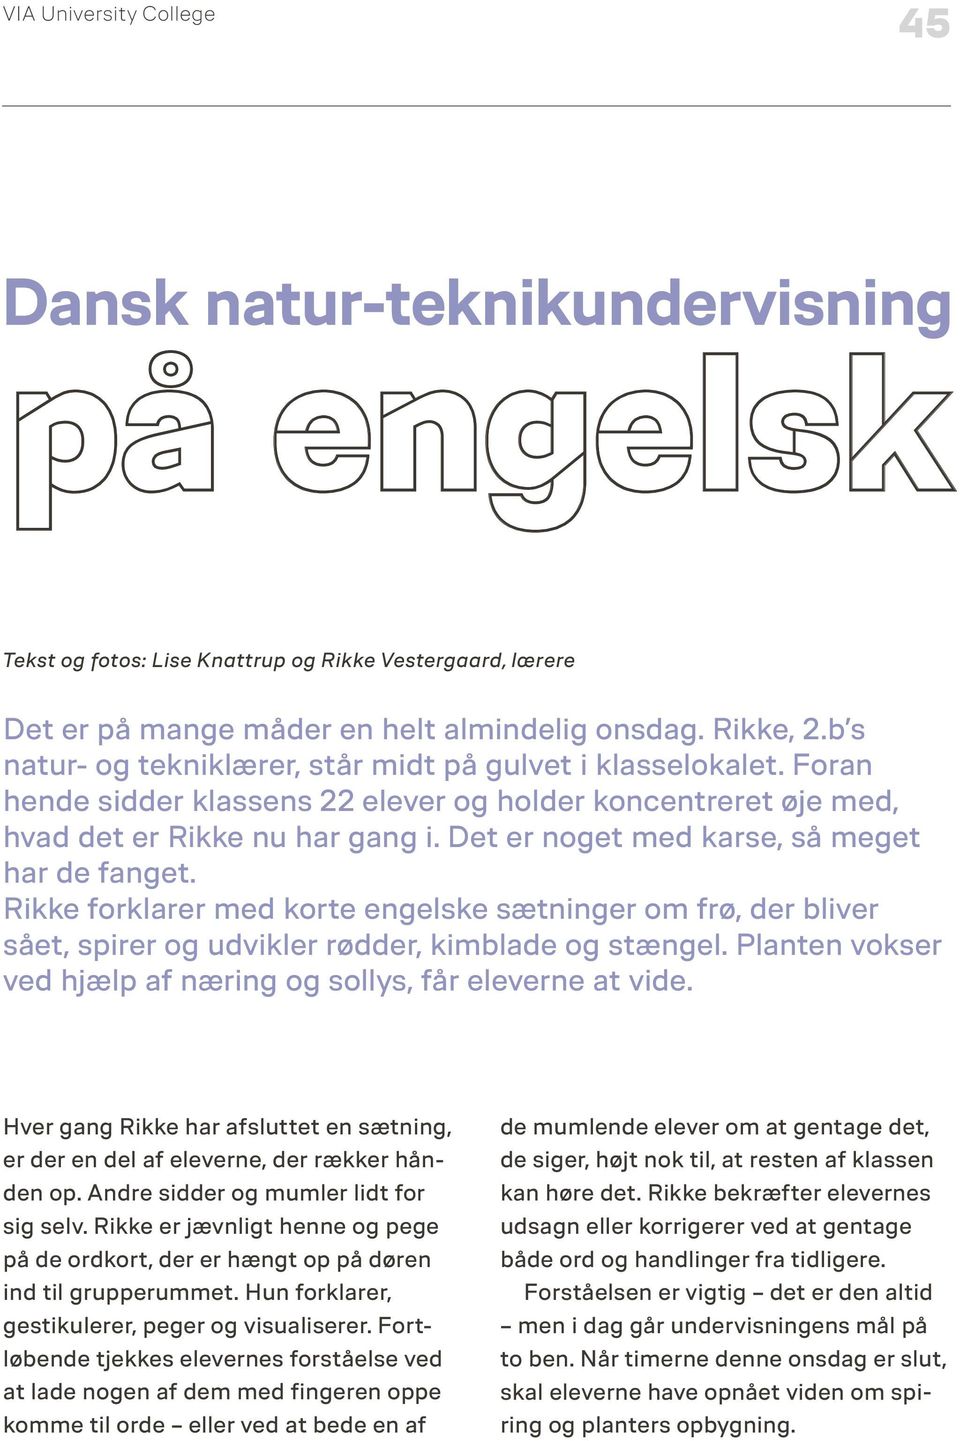 Dansk natur-teknikundervisning. på engelsk - PDF Free Download